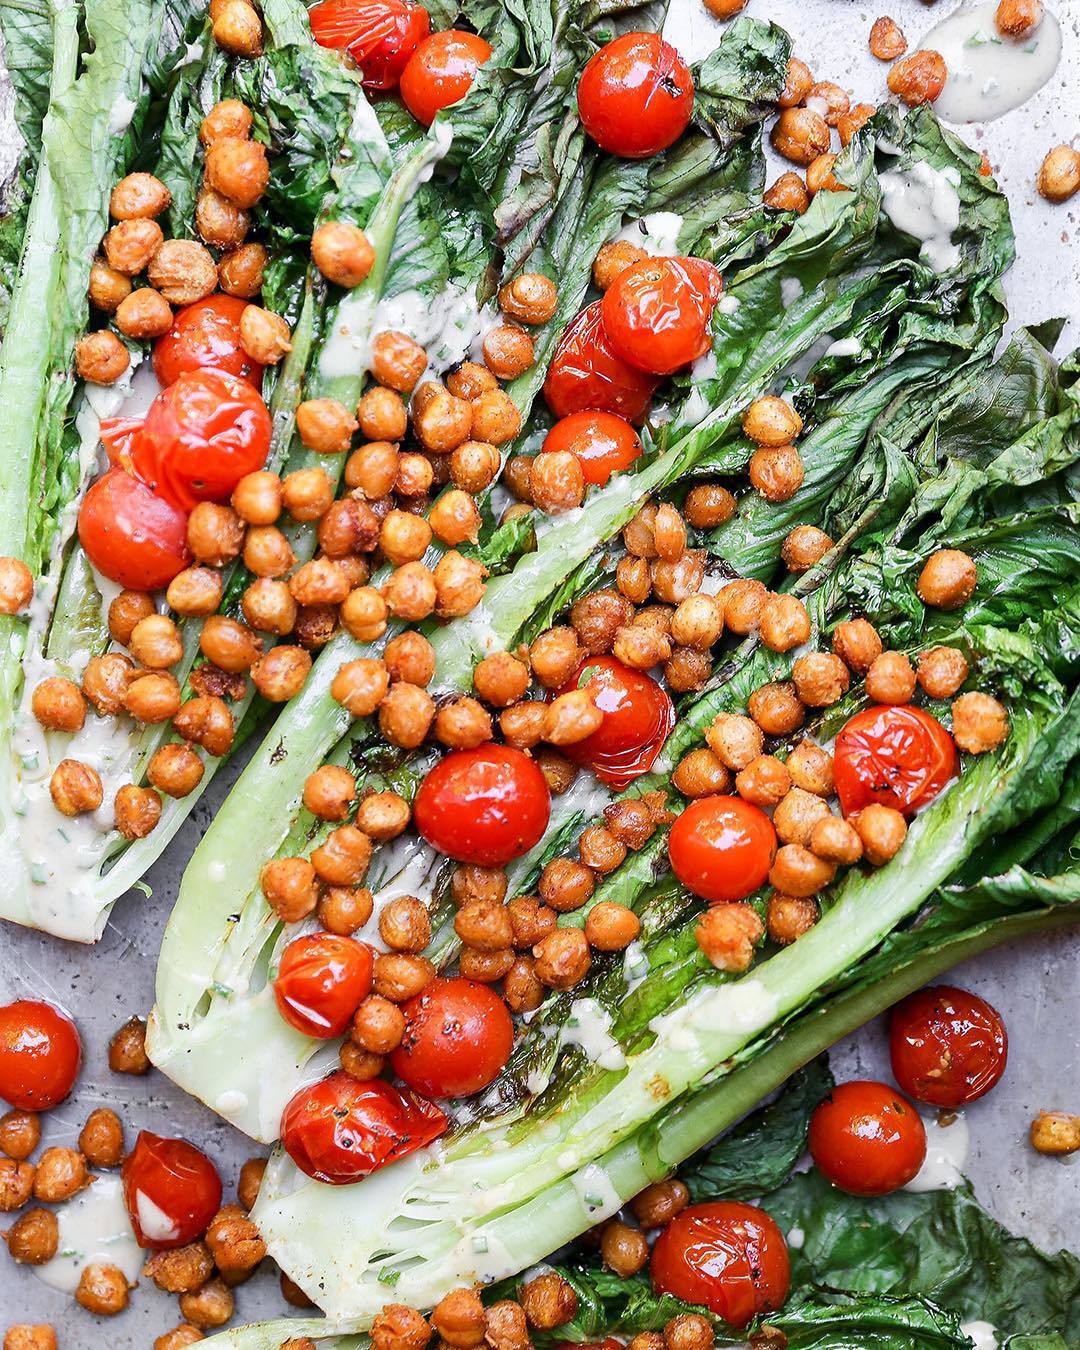 Nàng Tiến sĩ từ bỏ sự nghiệp nghiên cứu để trở thành food blogger, say mê rau xanh và tạo ra những đĩa salad vừa đẹp lại vừa ngon - Ảnh 18.